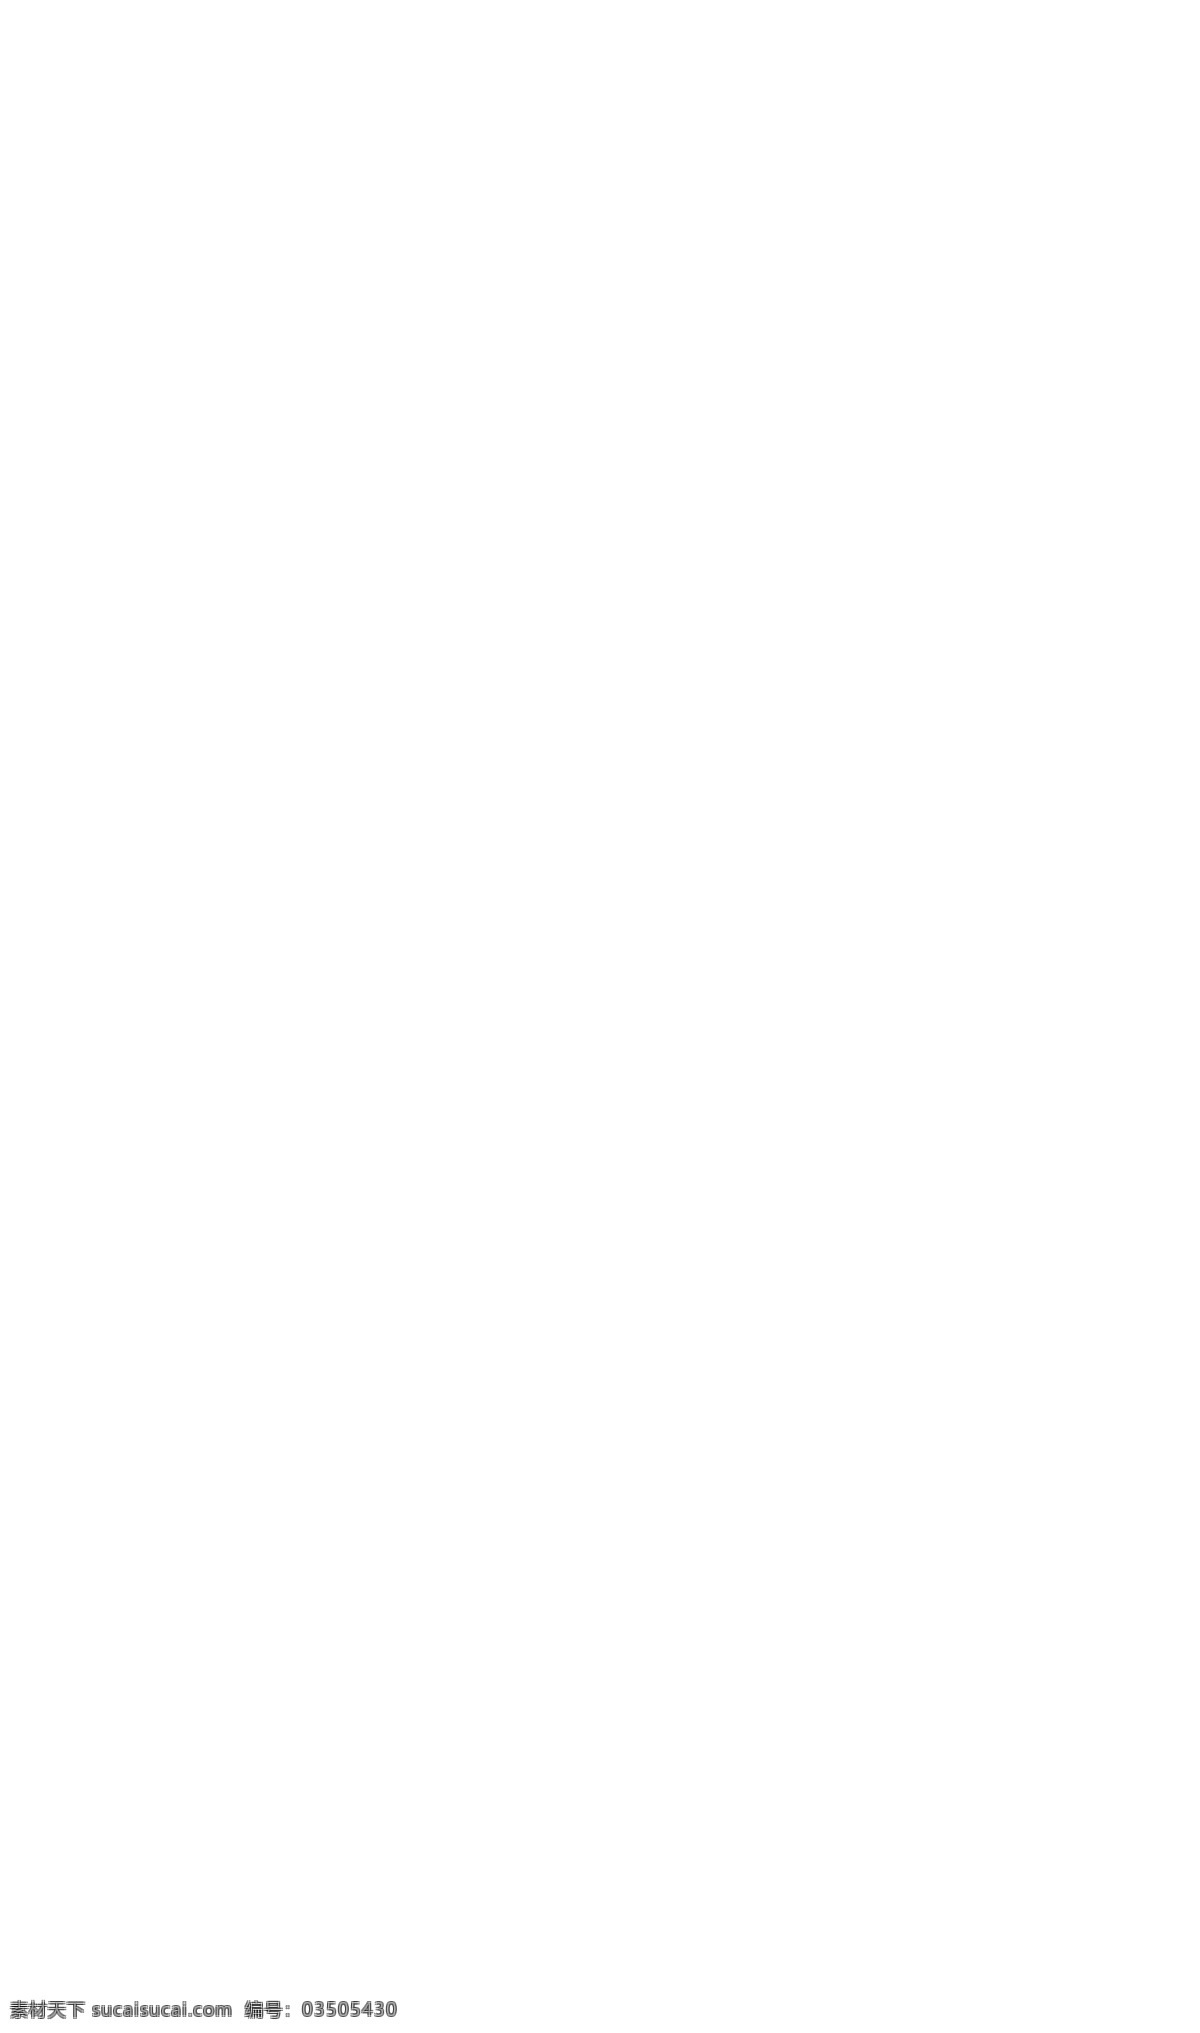 婚纱摄影 网站 模板 婚纱摄影网站 网站模版 中文模板 丝带导航条 火爆活动 恋曲2015 web 界面设计 网页素材 其他网页素材